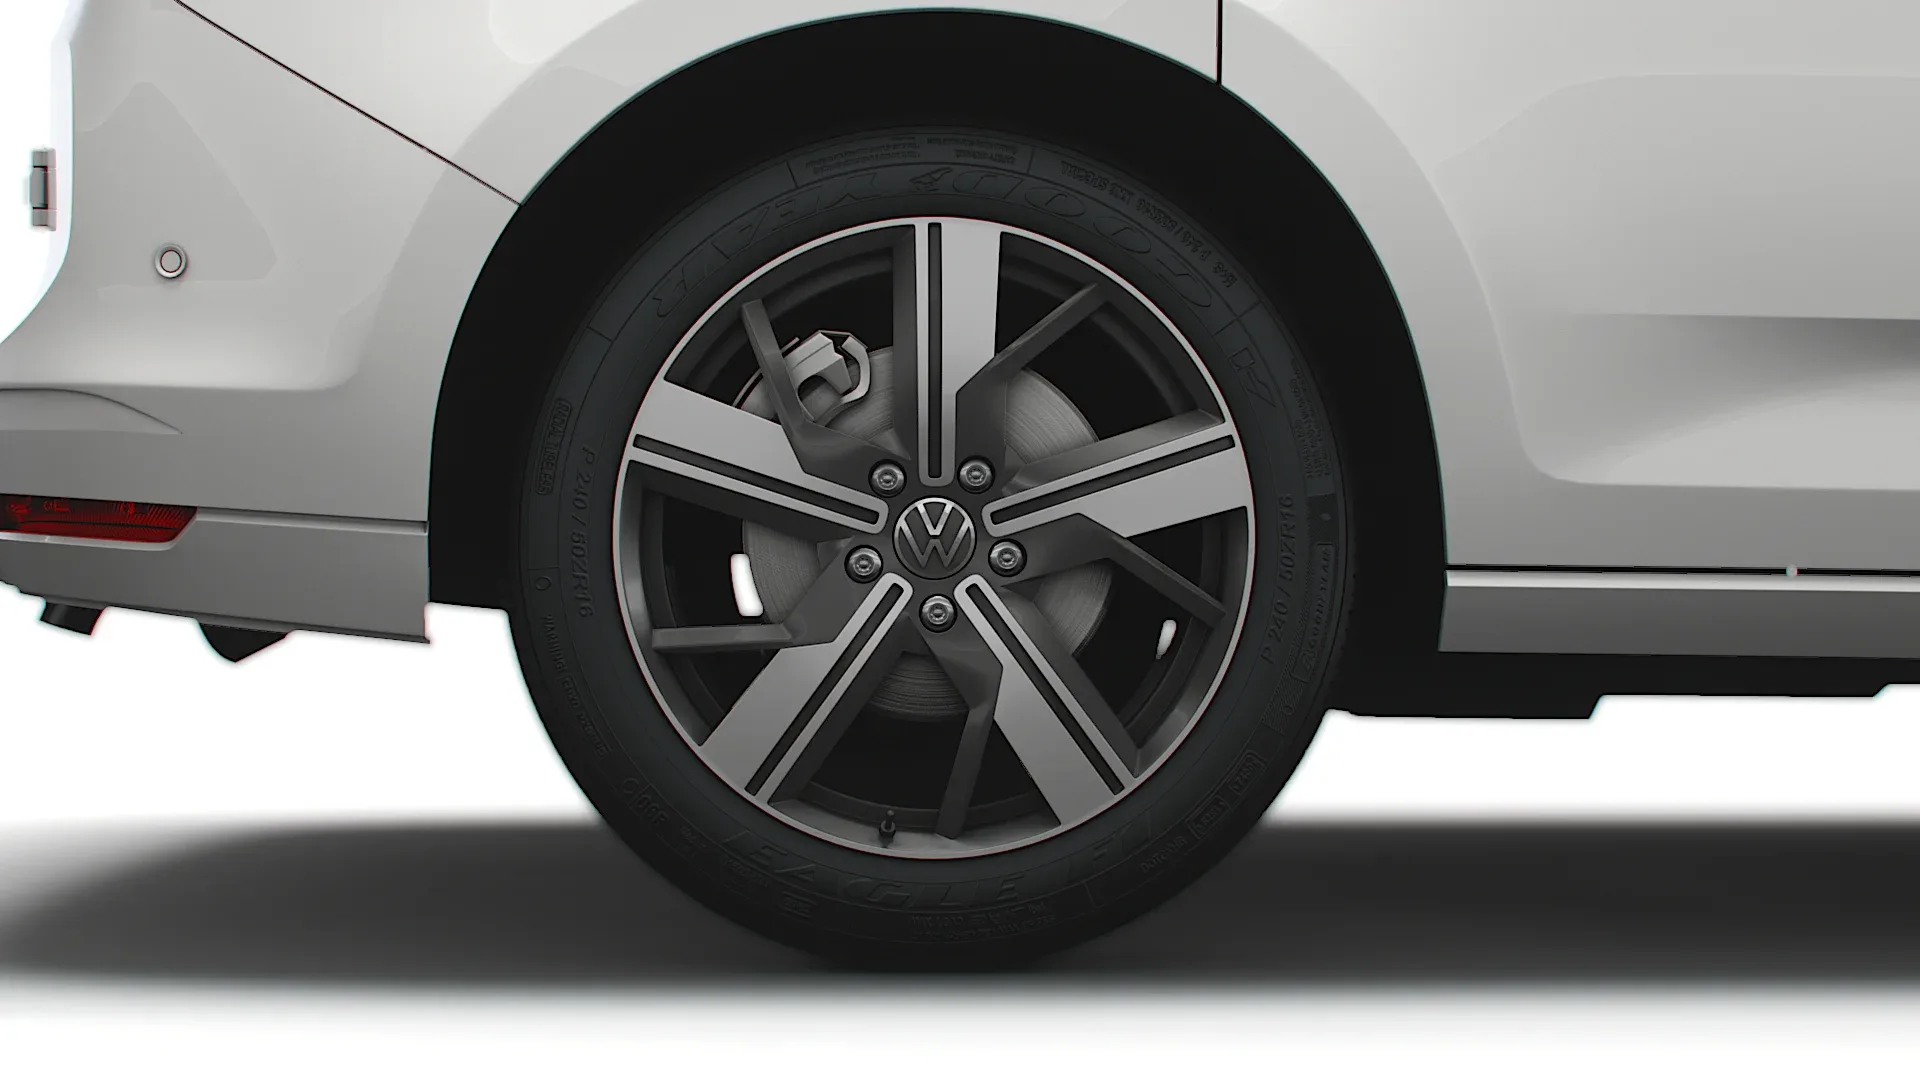 Volkswagen Caddy Commerce Pro Van 2021